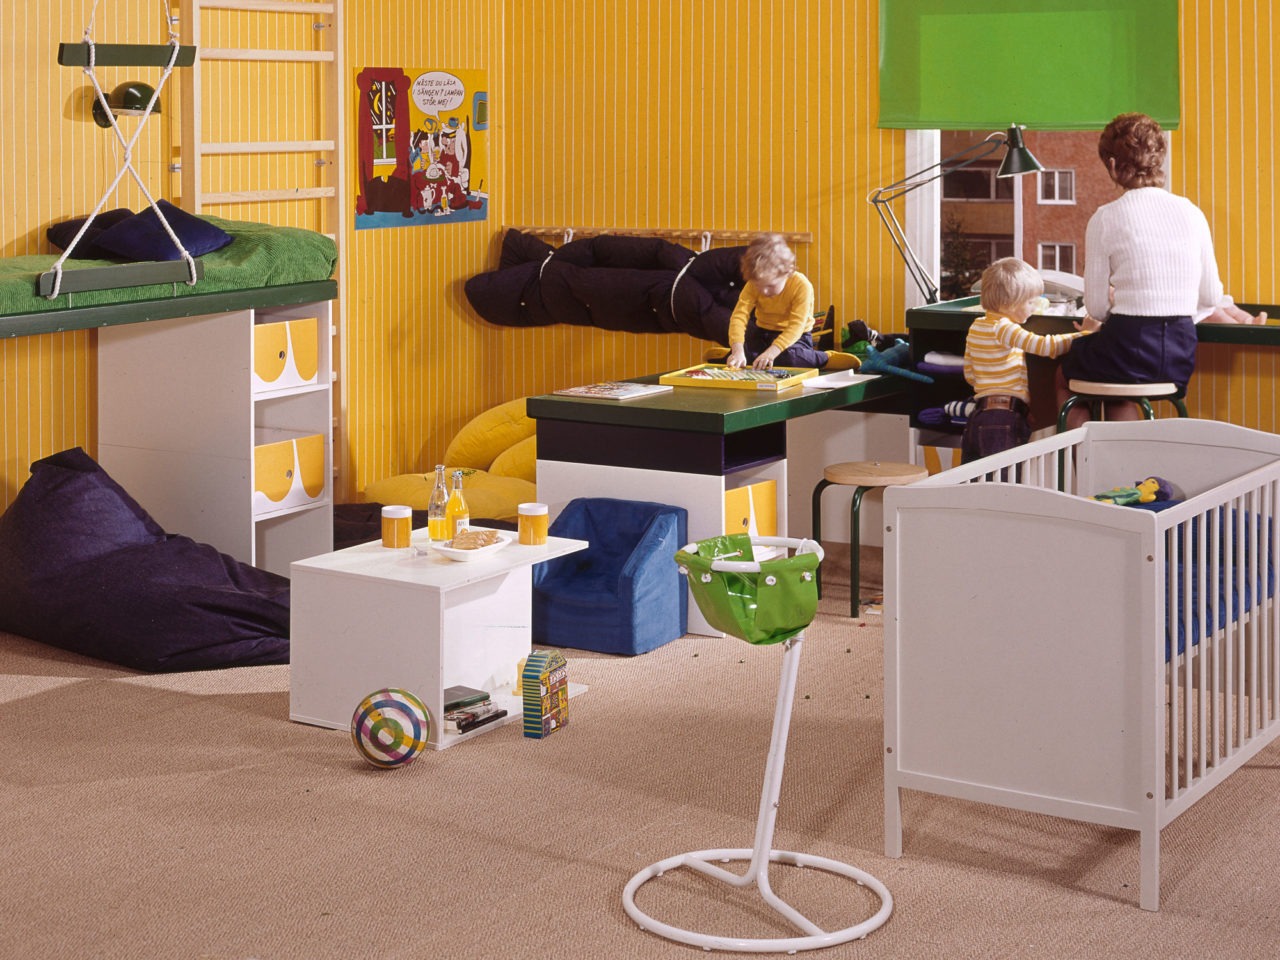 Una mujer sentada frente a un cambiador con un bebé en un cuarto amarillo con una cuna, juguetes y dos niños jugando cerca.